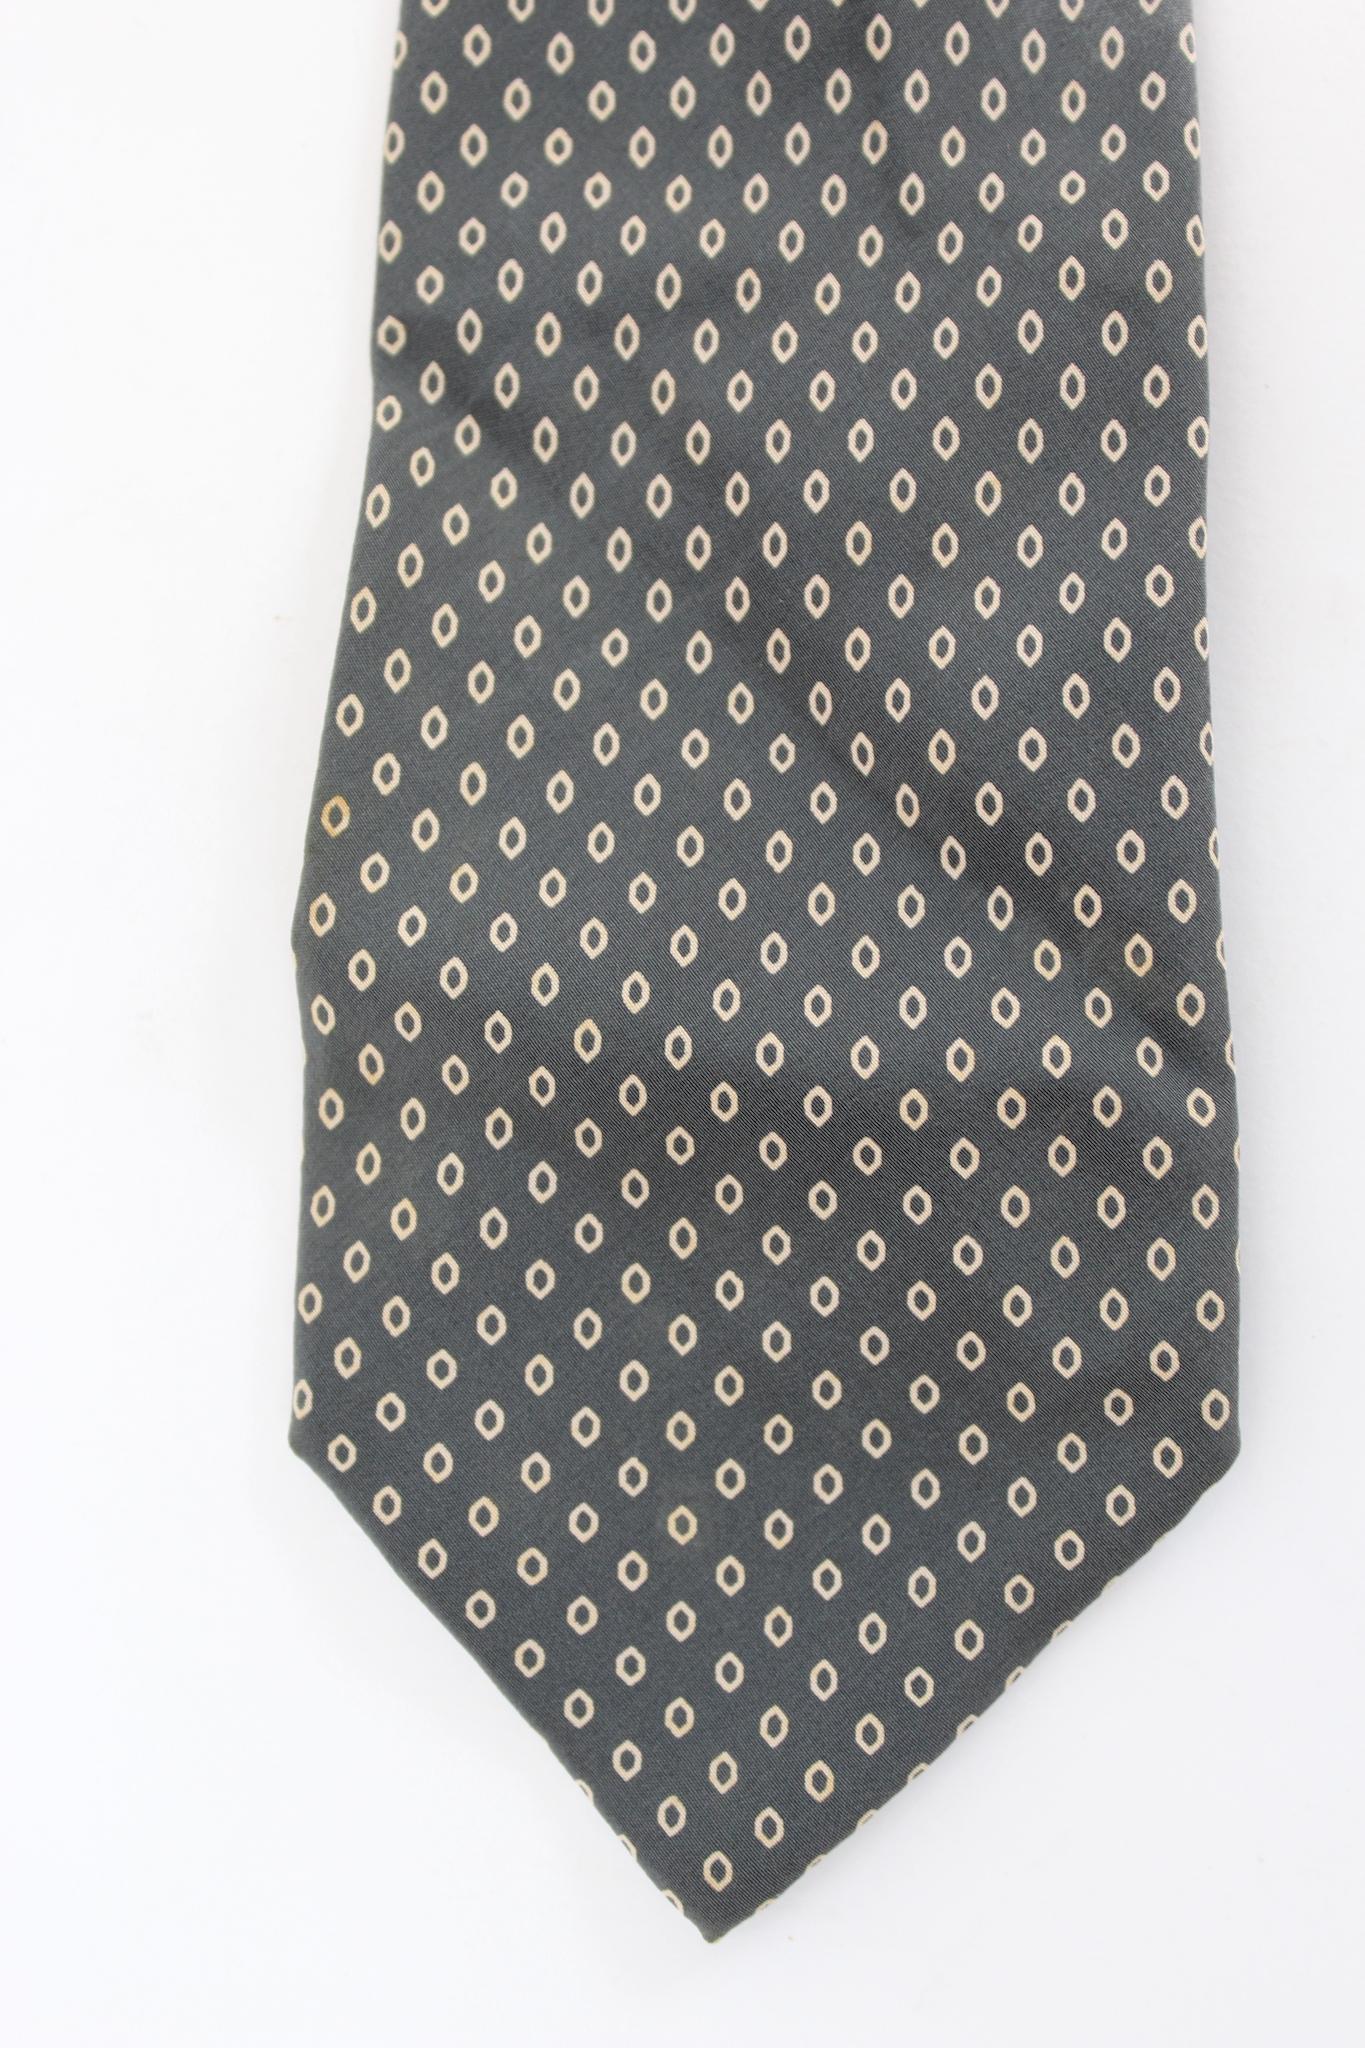 Yves Saint Laurent cravate géométrique classique vintage des années 90. Couleur grise et beige, 100% soie. Fabriquées en Italie.

Longueur : 147 cm
Largeur : 8 cm